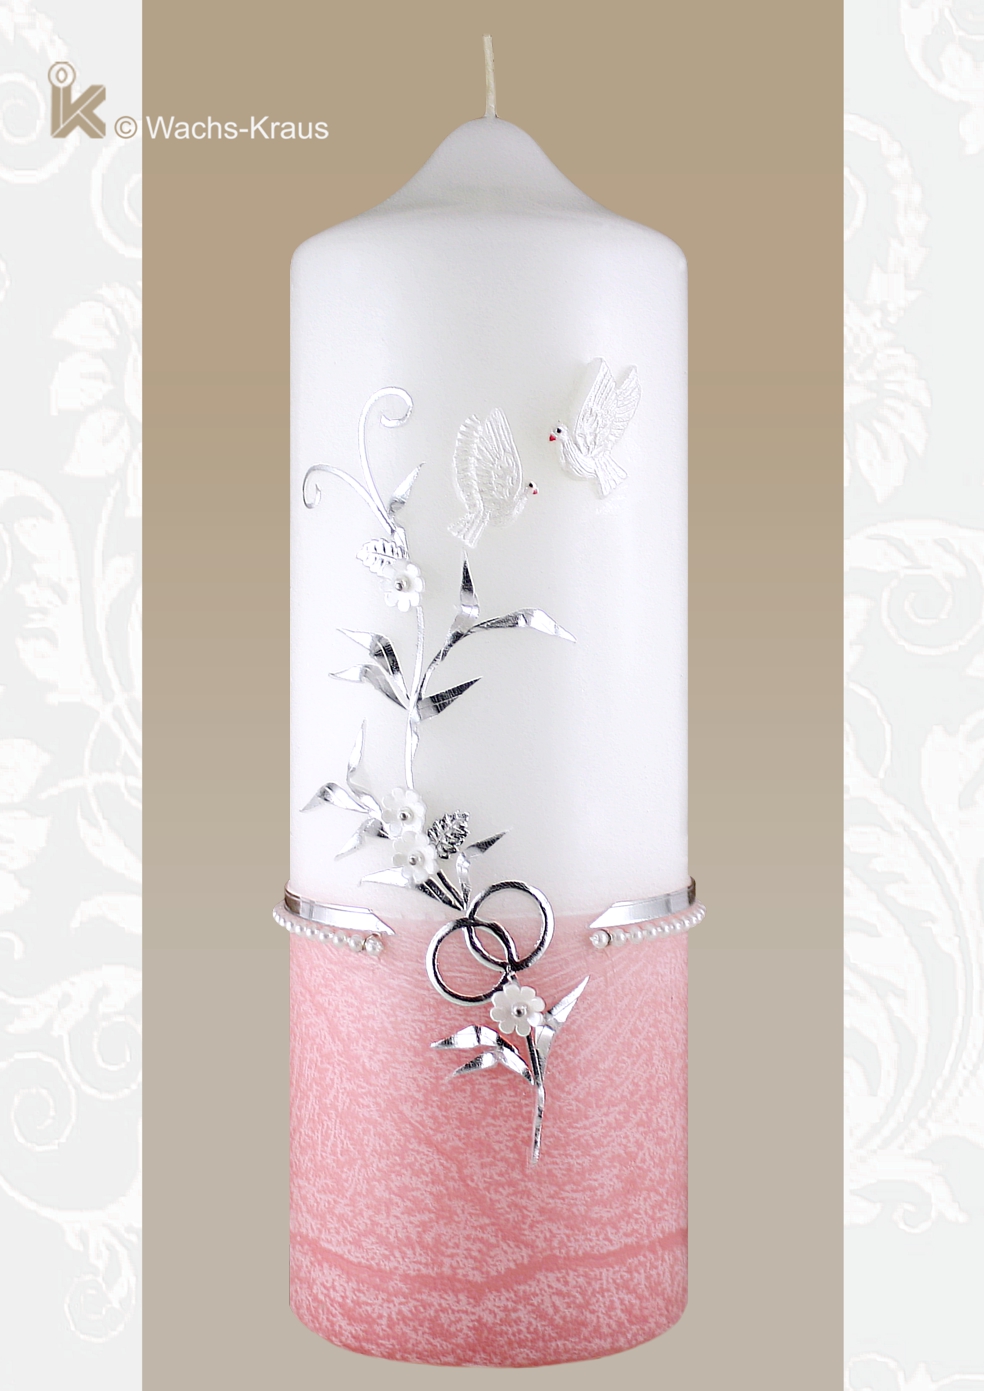 Hochzeitskerze exklusiv und bezaubernd fein gearbeitet. Unten zart rosa und dazu feinste Verzierung in edlem Silber.